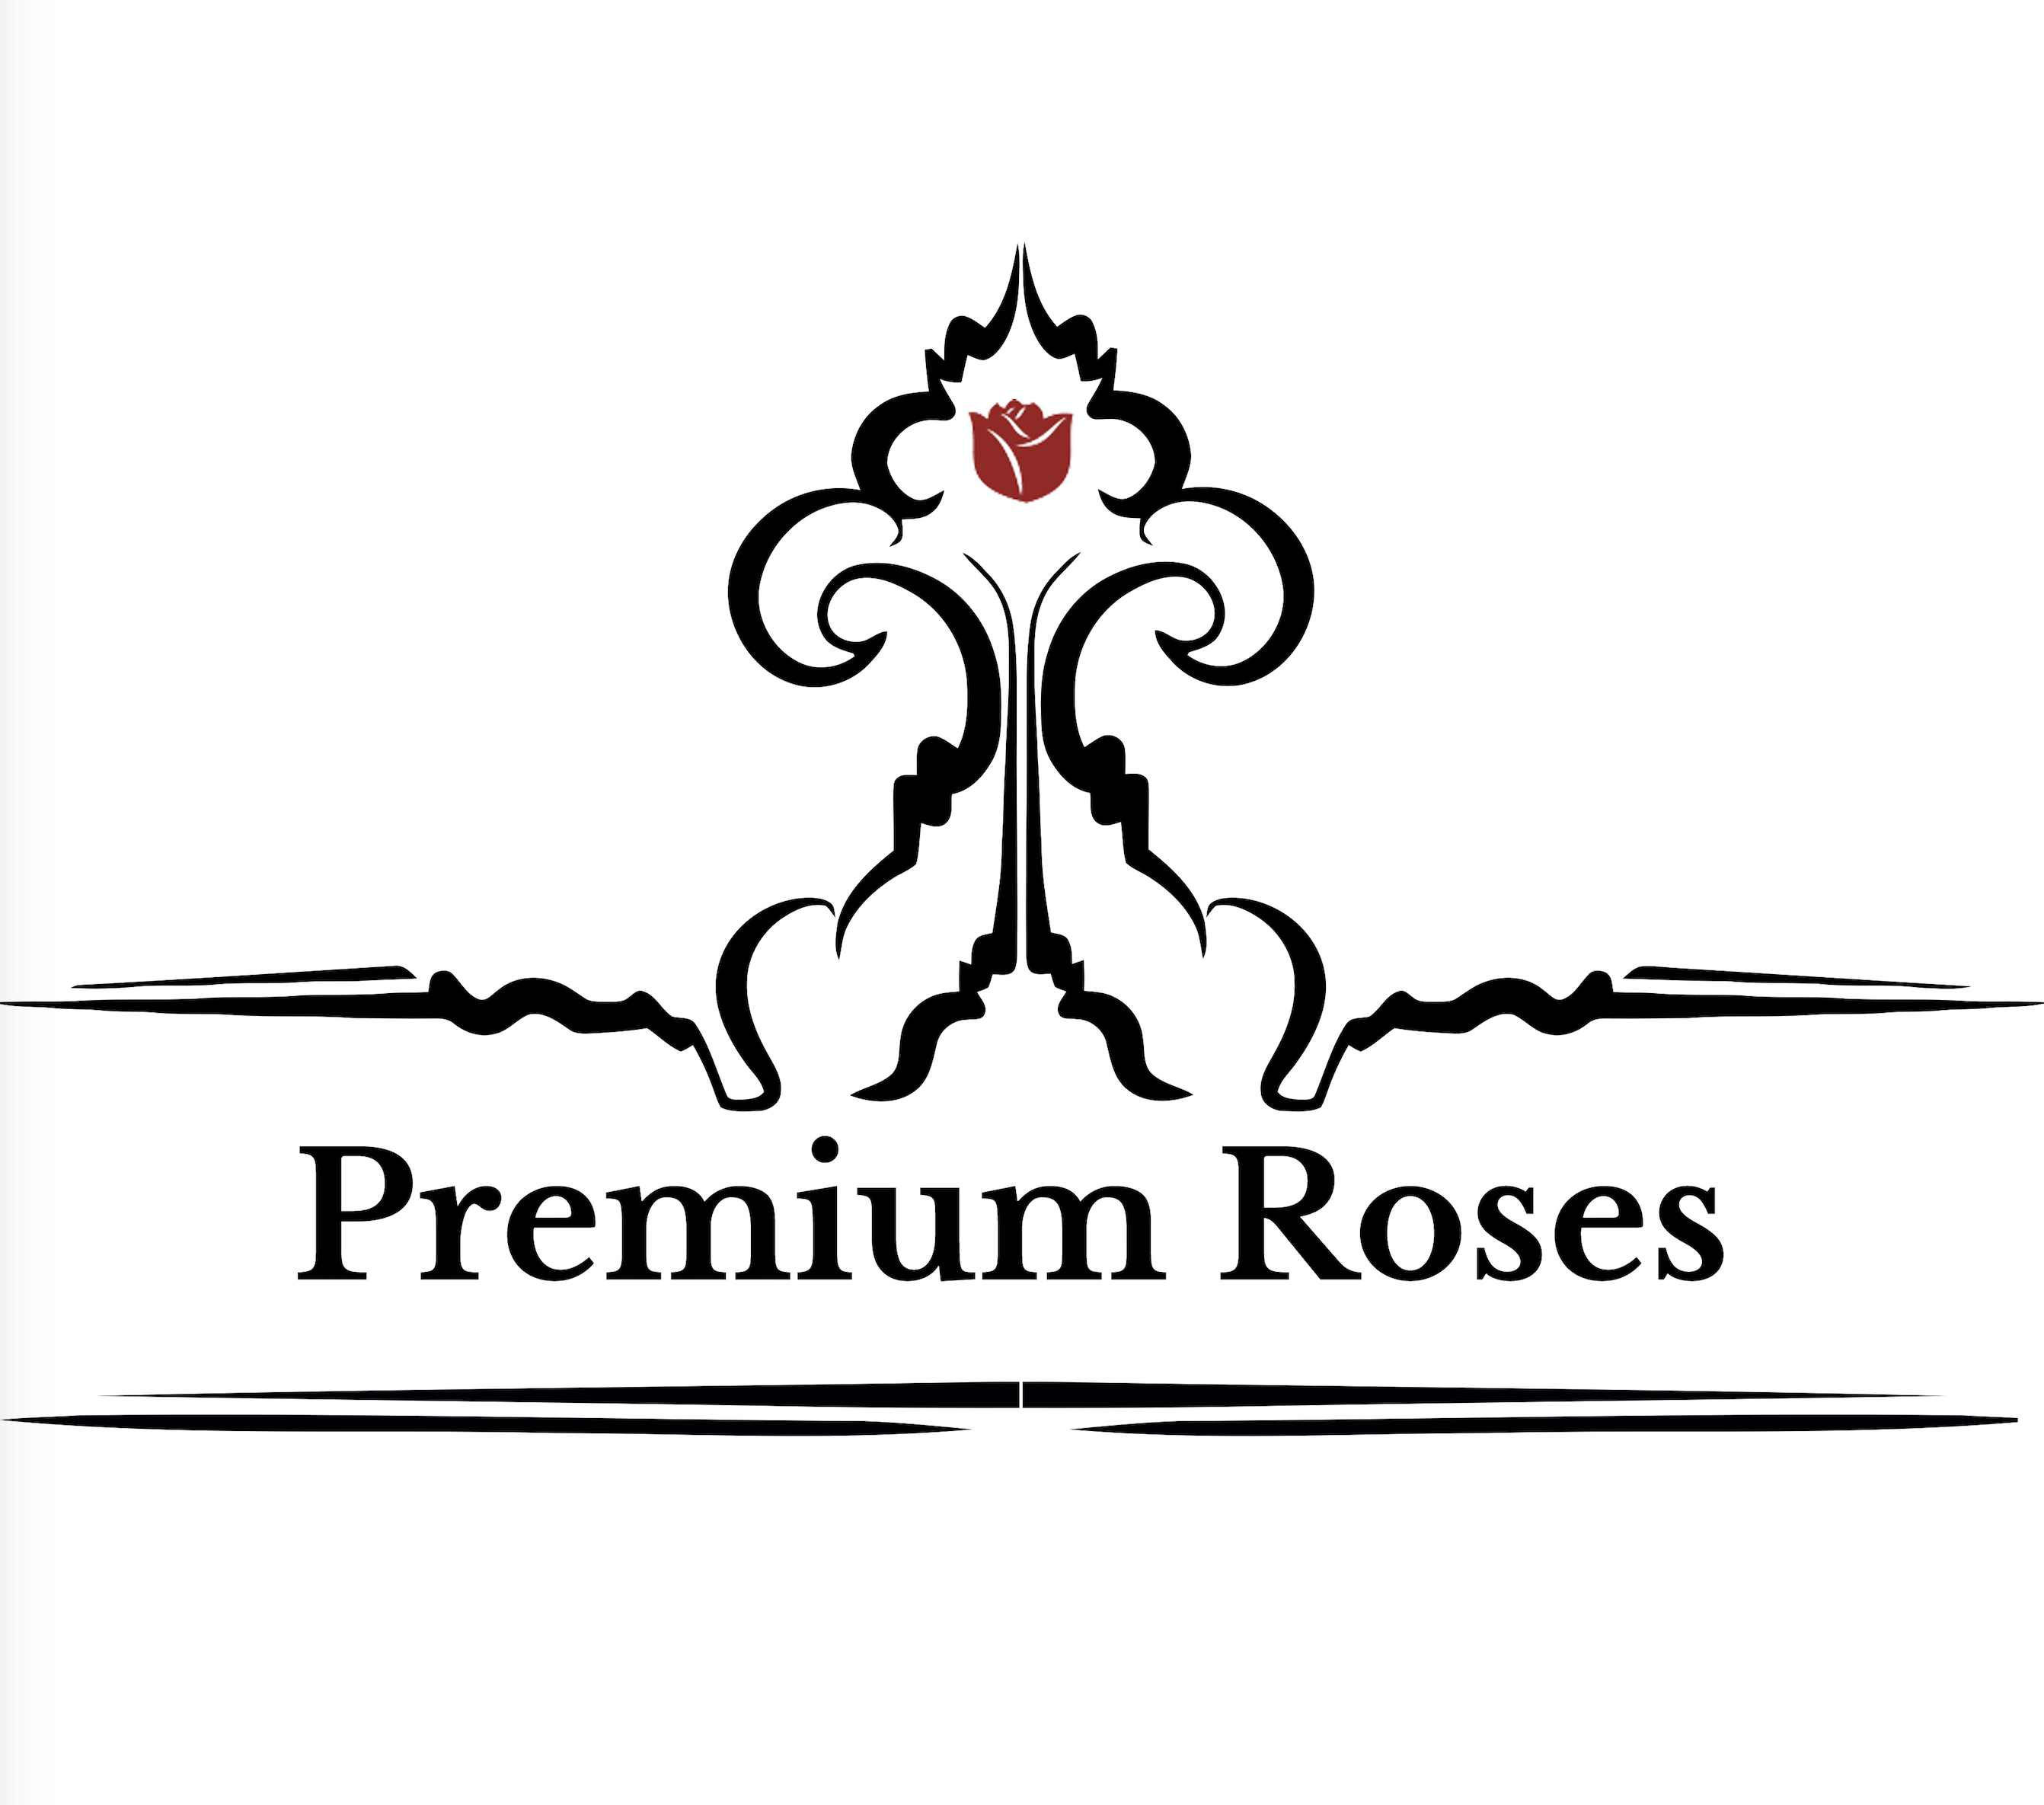 Premium Roses